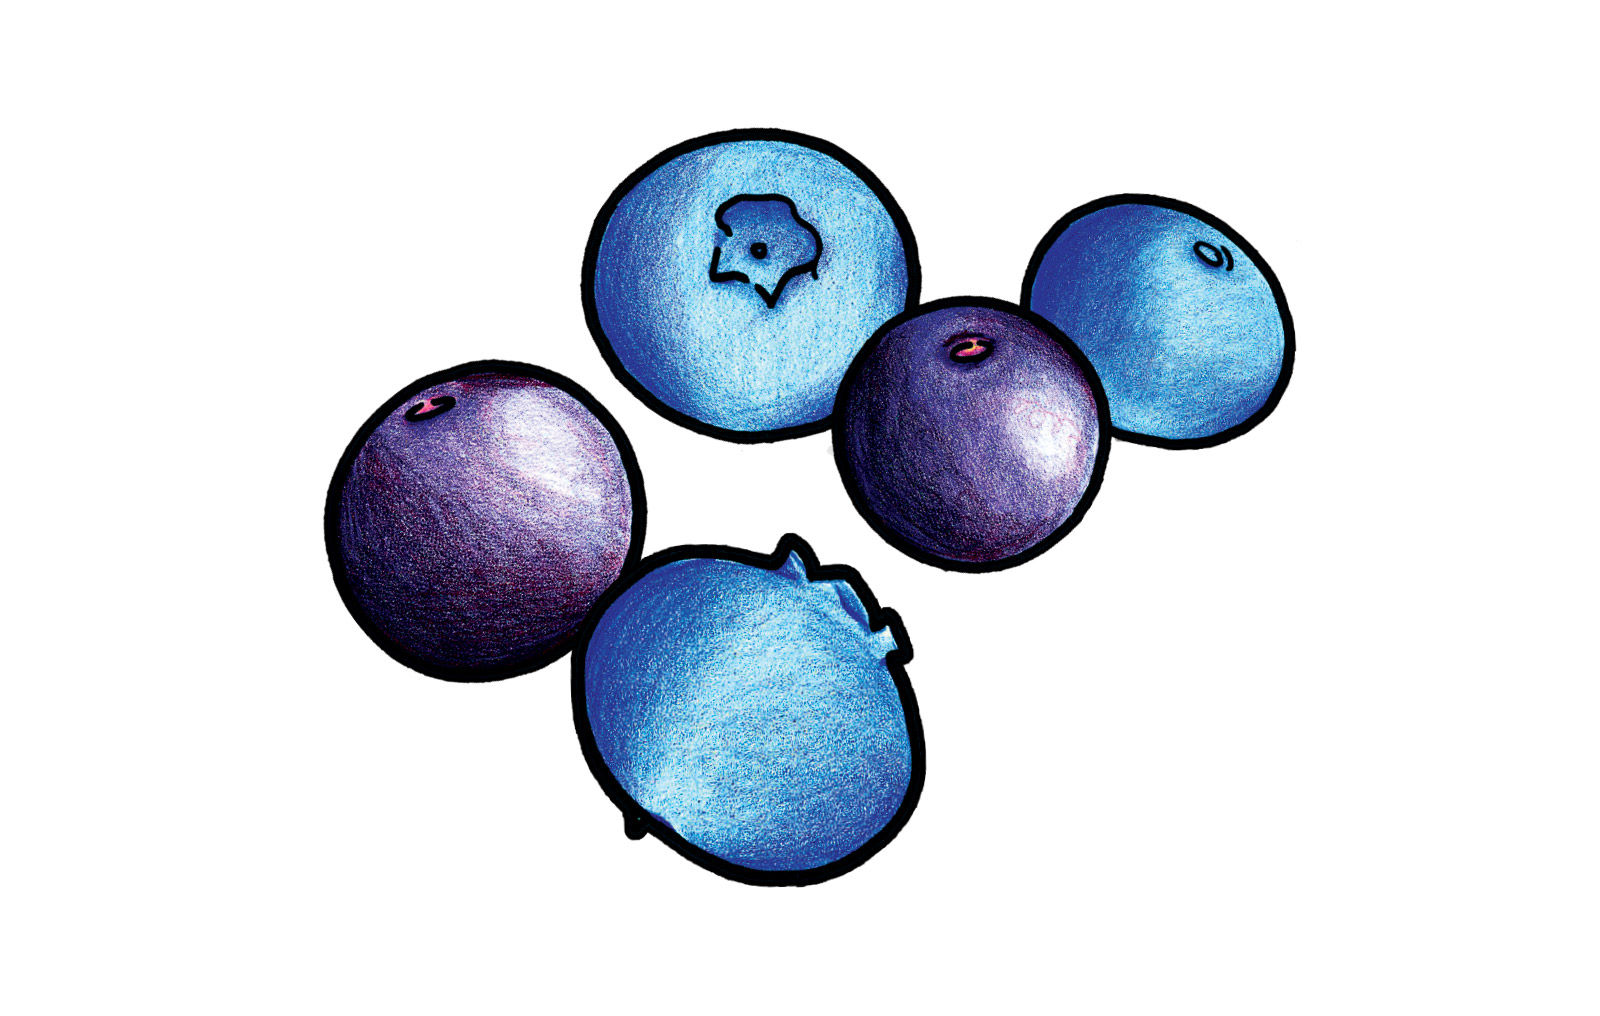 蓝莓插画